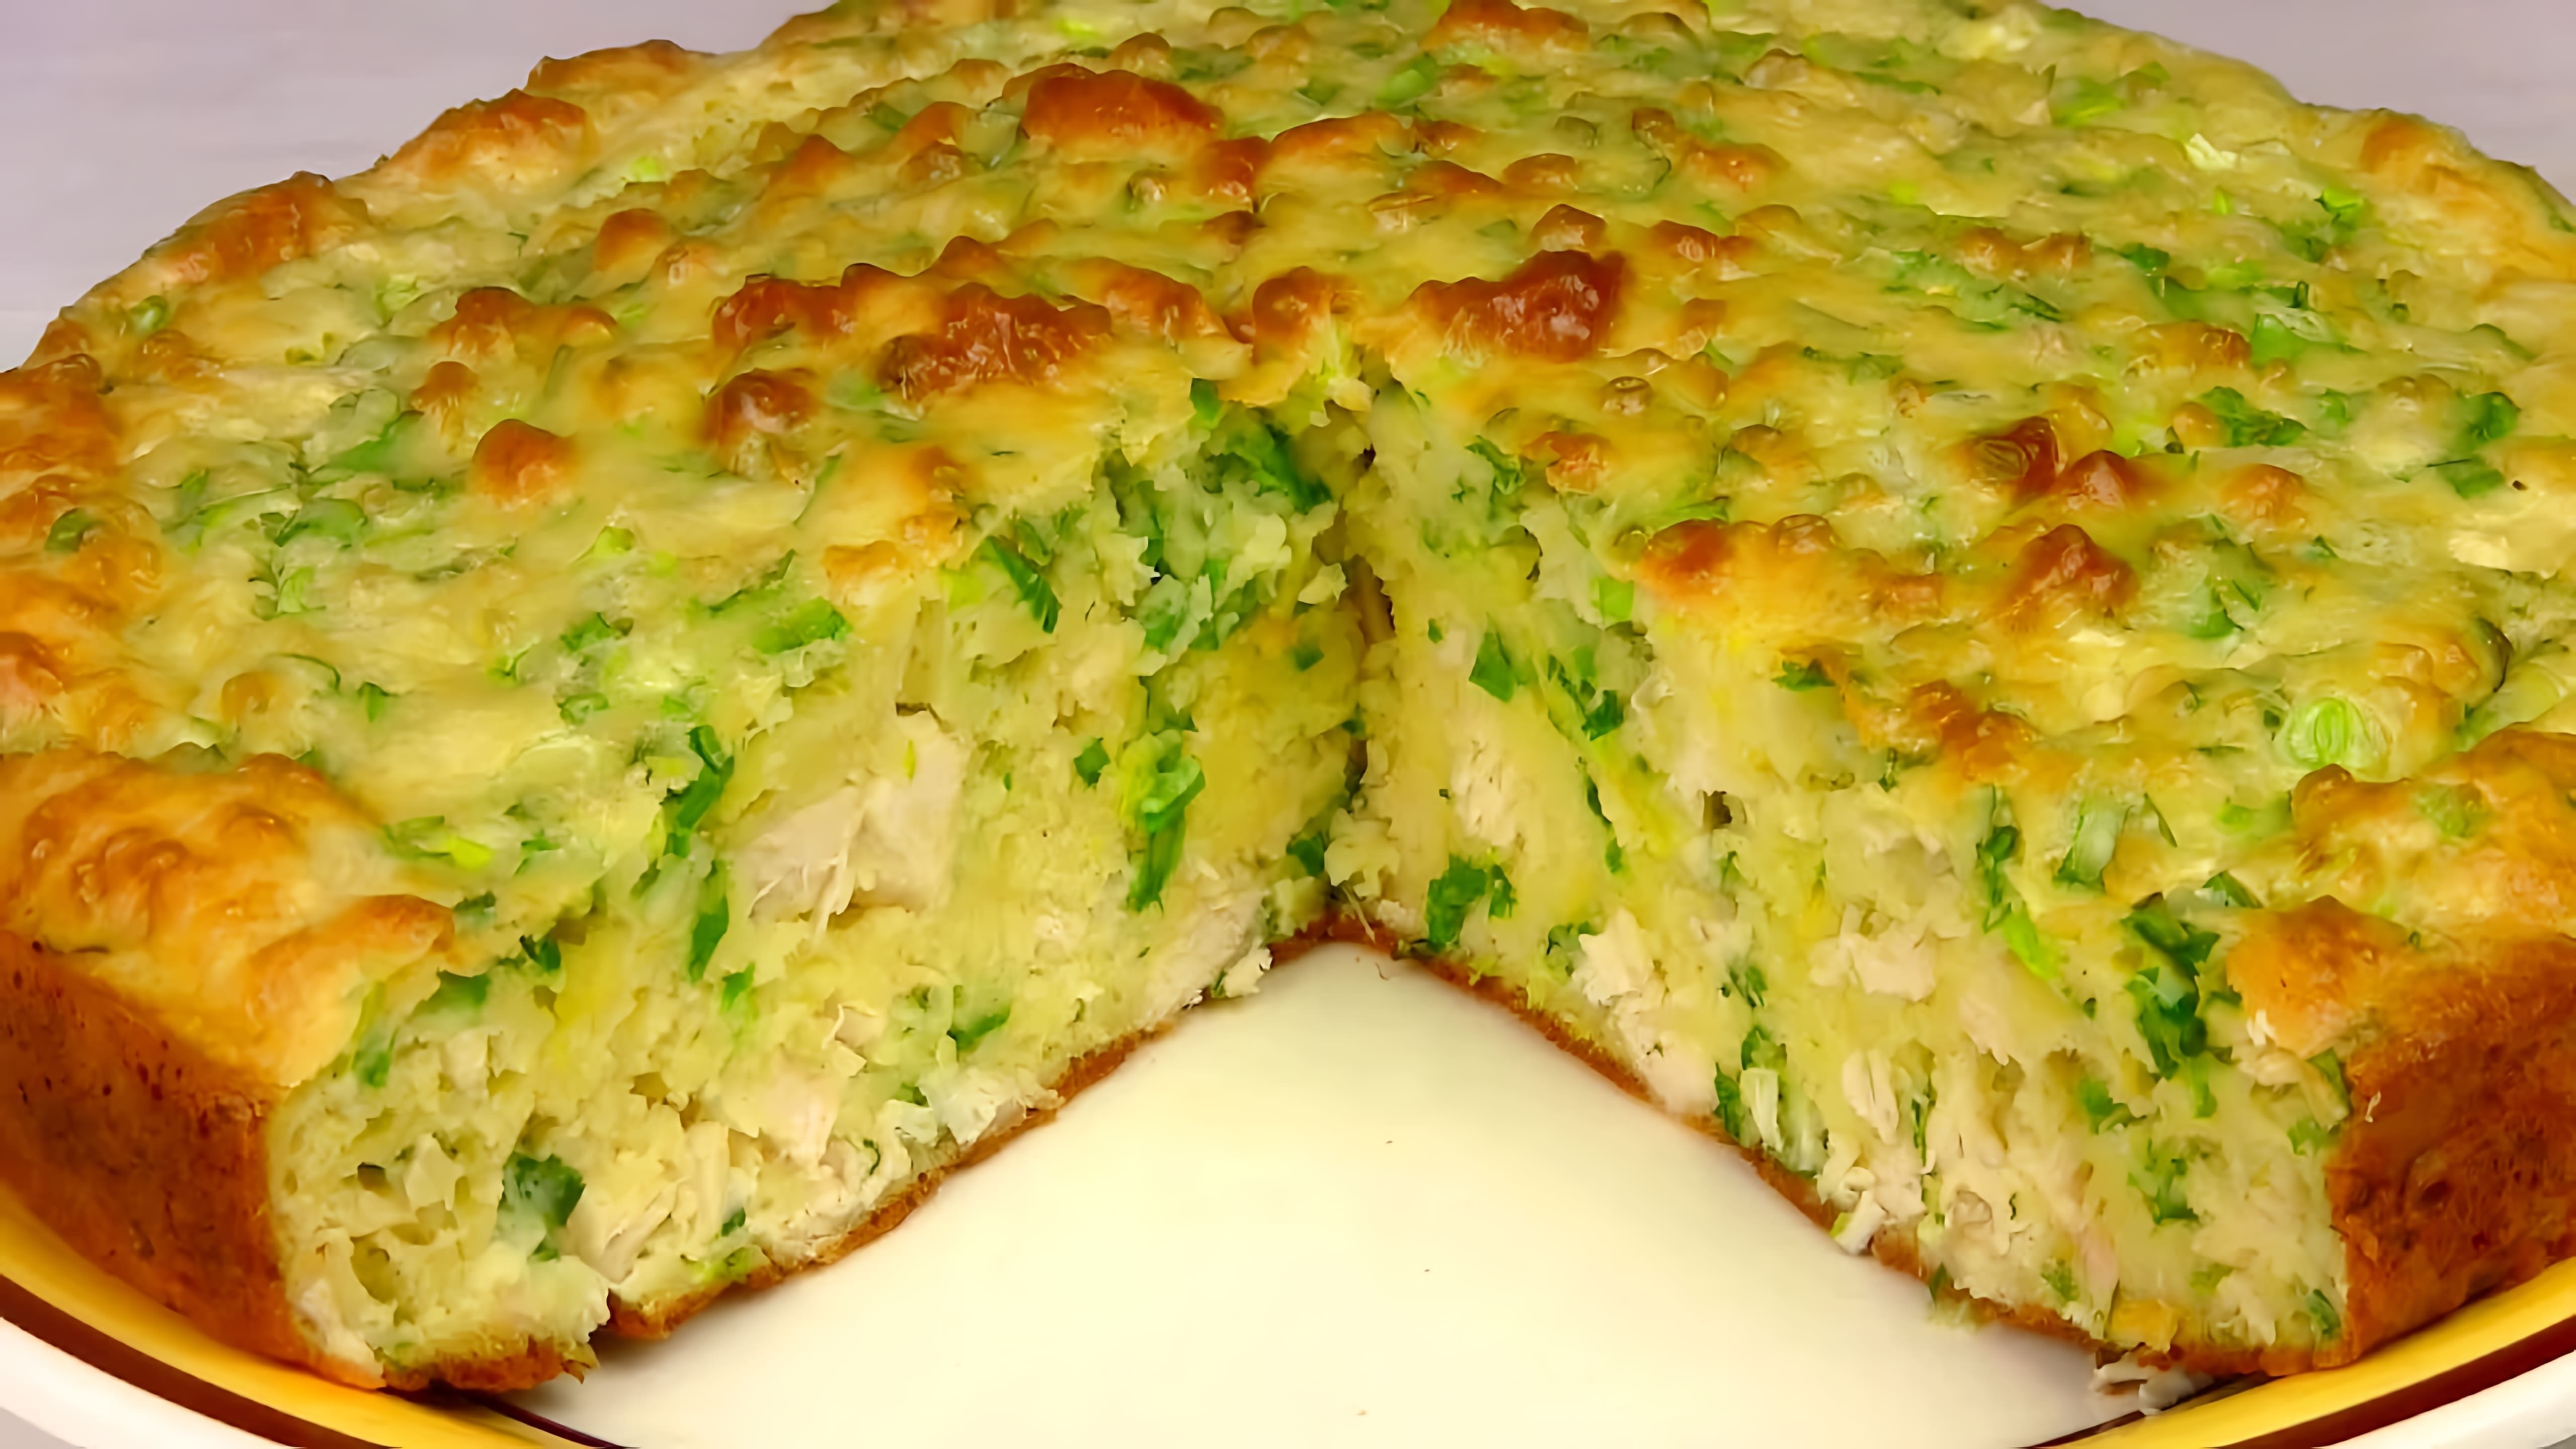 В этом видео демонстрируется рецепт приготовления заливного куриного пирога с зеленым луком